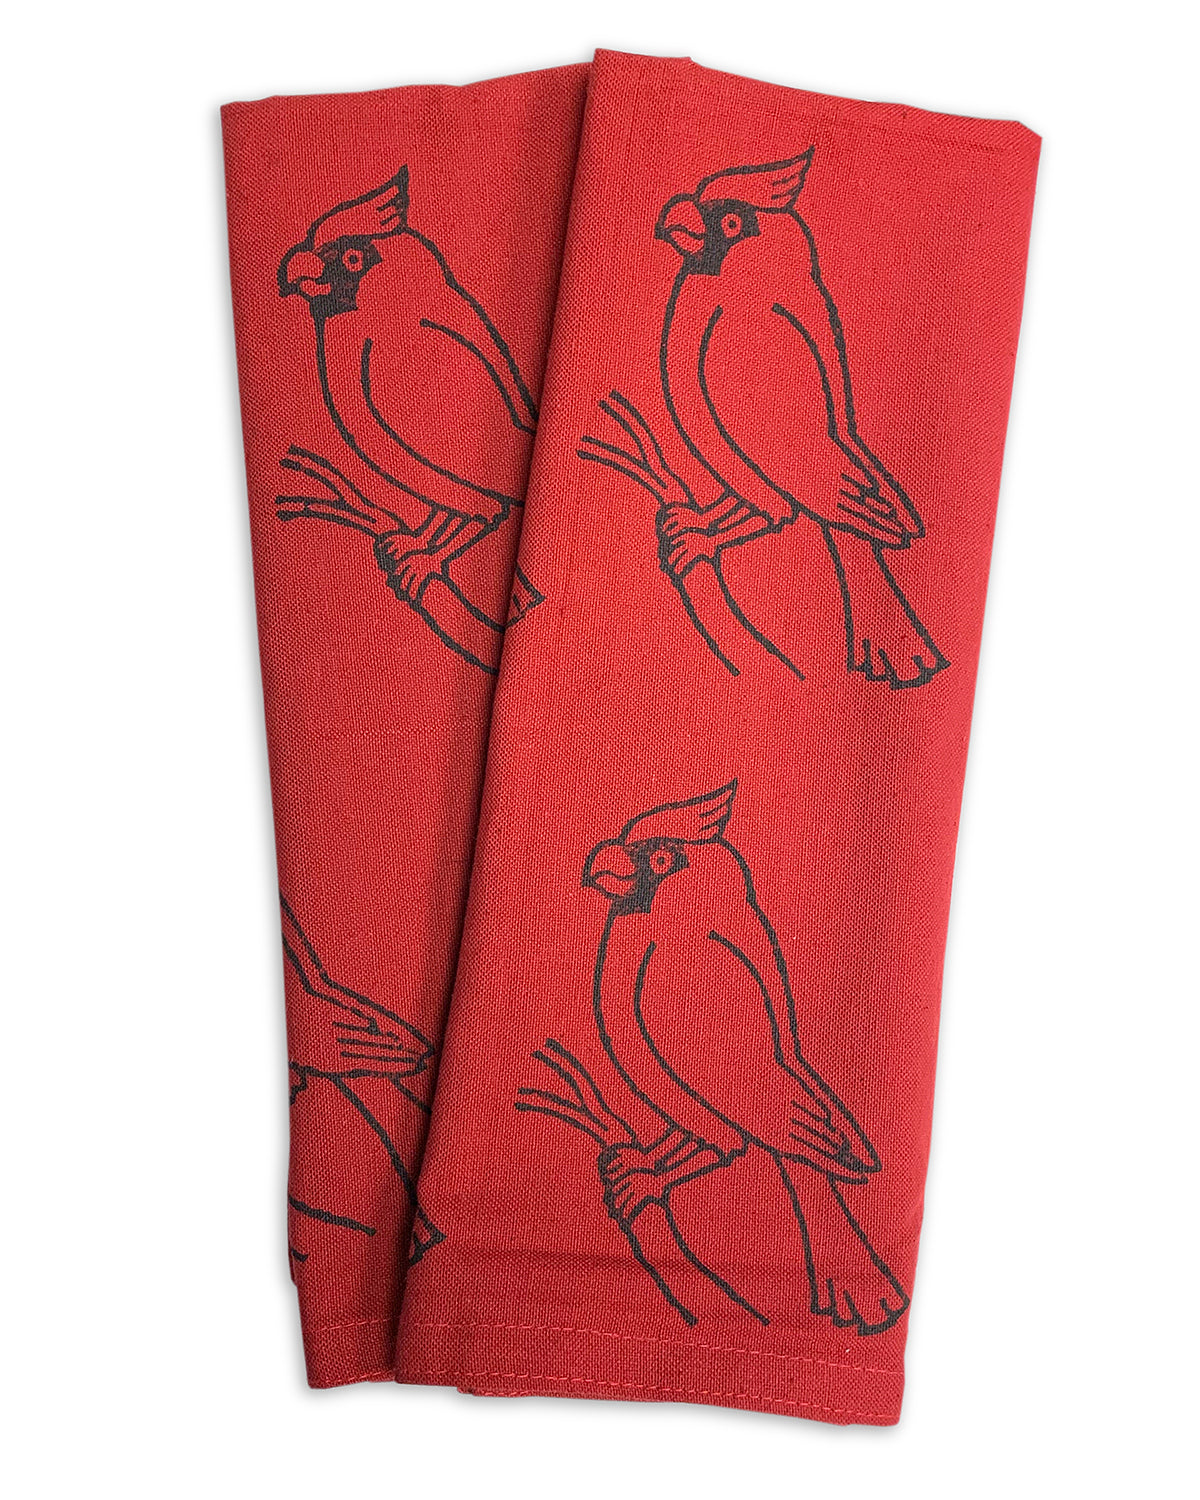 Red Cardinal Dishtowel Blockprint - Ram Shekhar